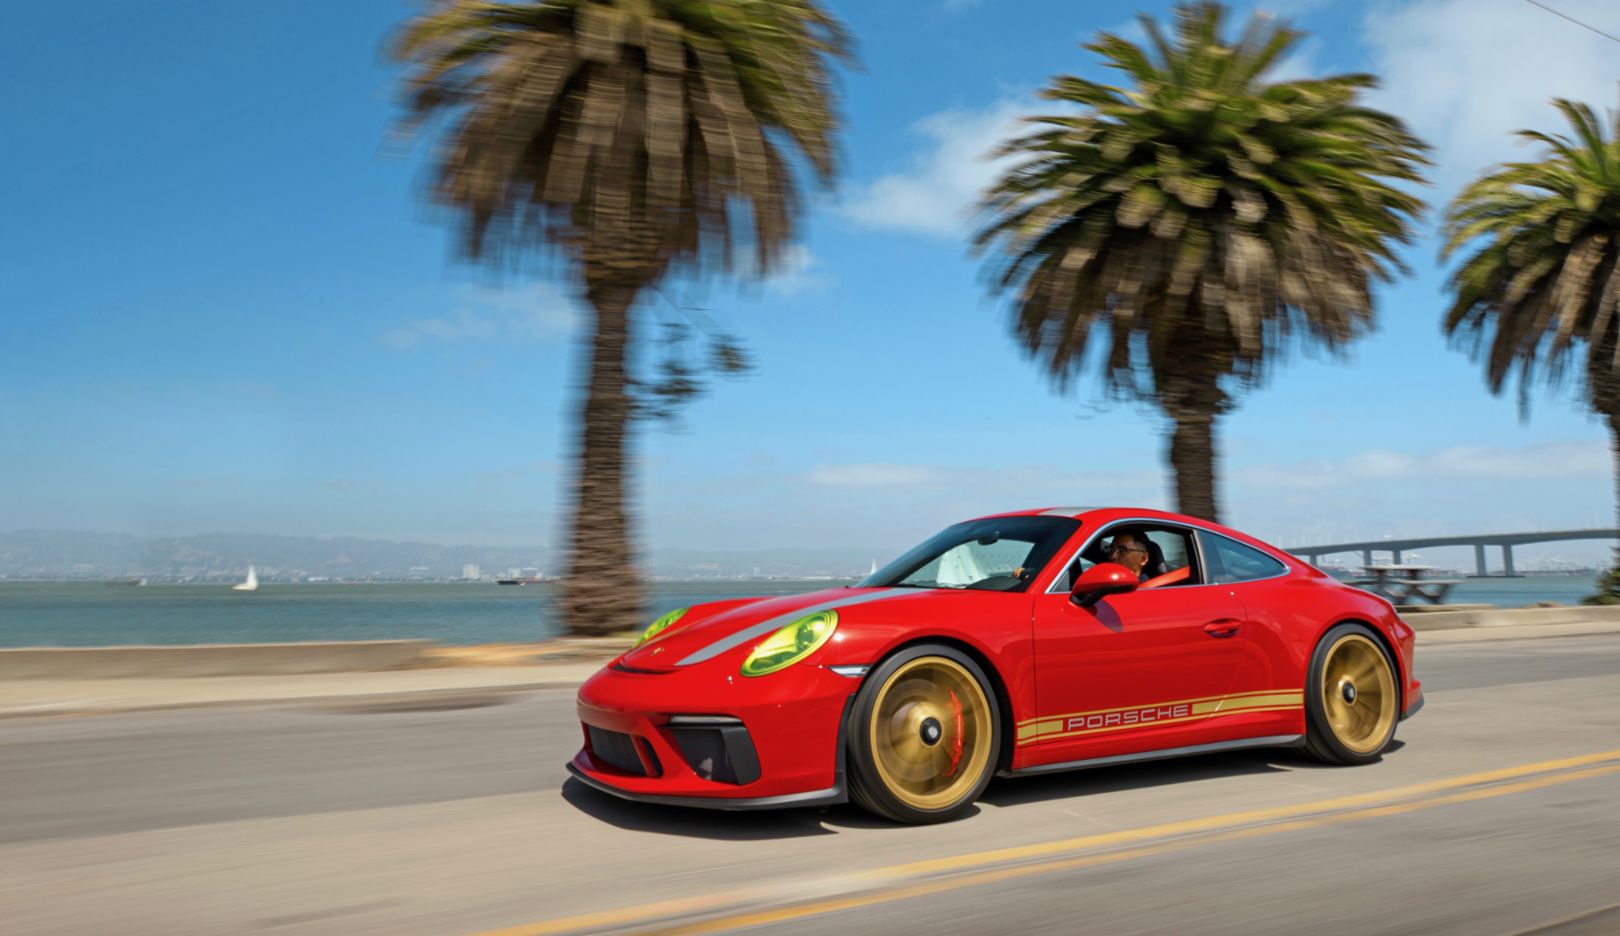 Сегодня в гараже Дэниэла Ву красуется также Porsche 911 GT3 Touring, выпущенный в 2018 году. Благодаря своей уникальной окраске этот спорткар быстро привлекает внимание на улицах Сан-Франциско. 